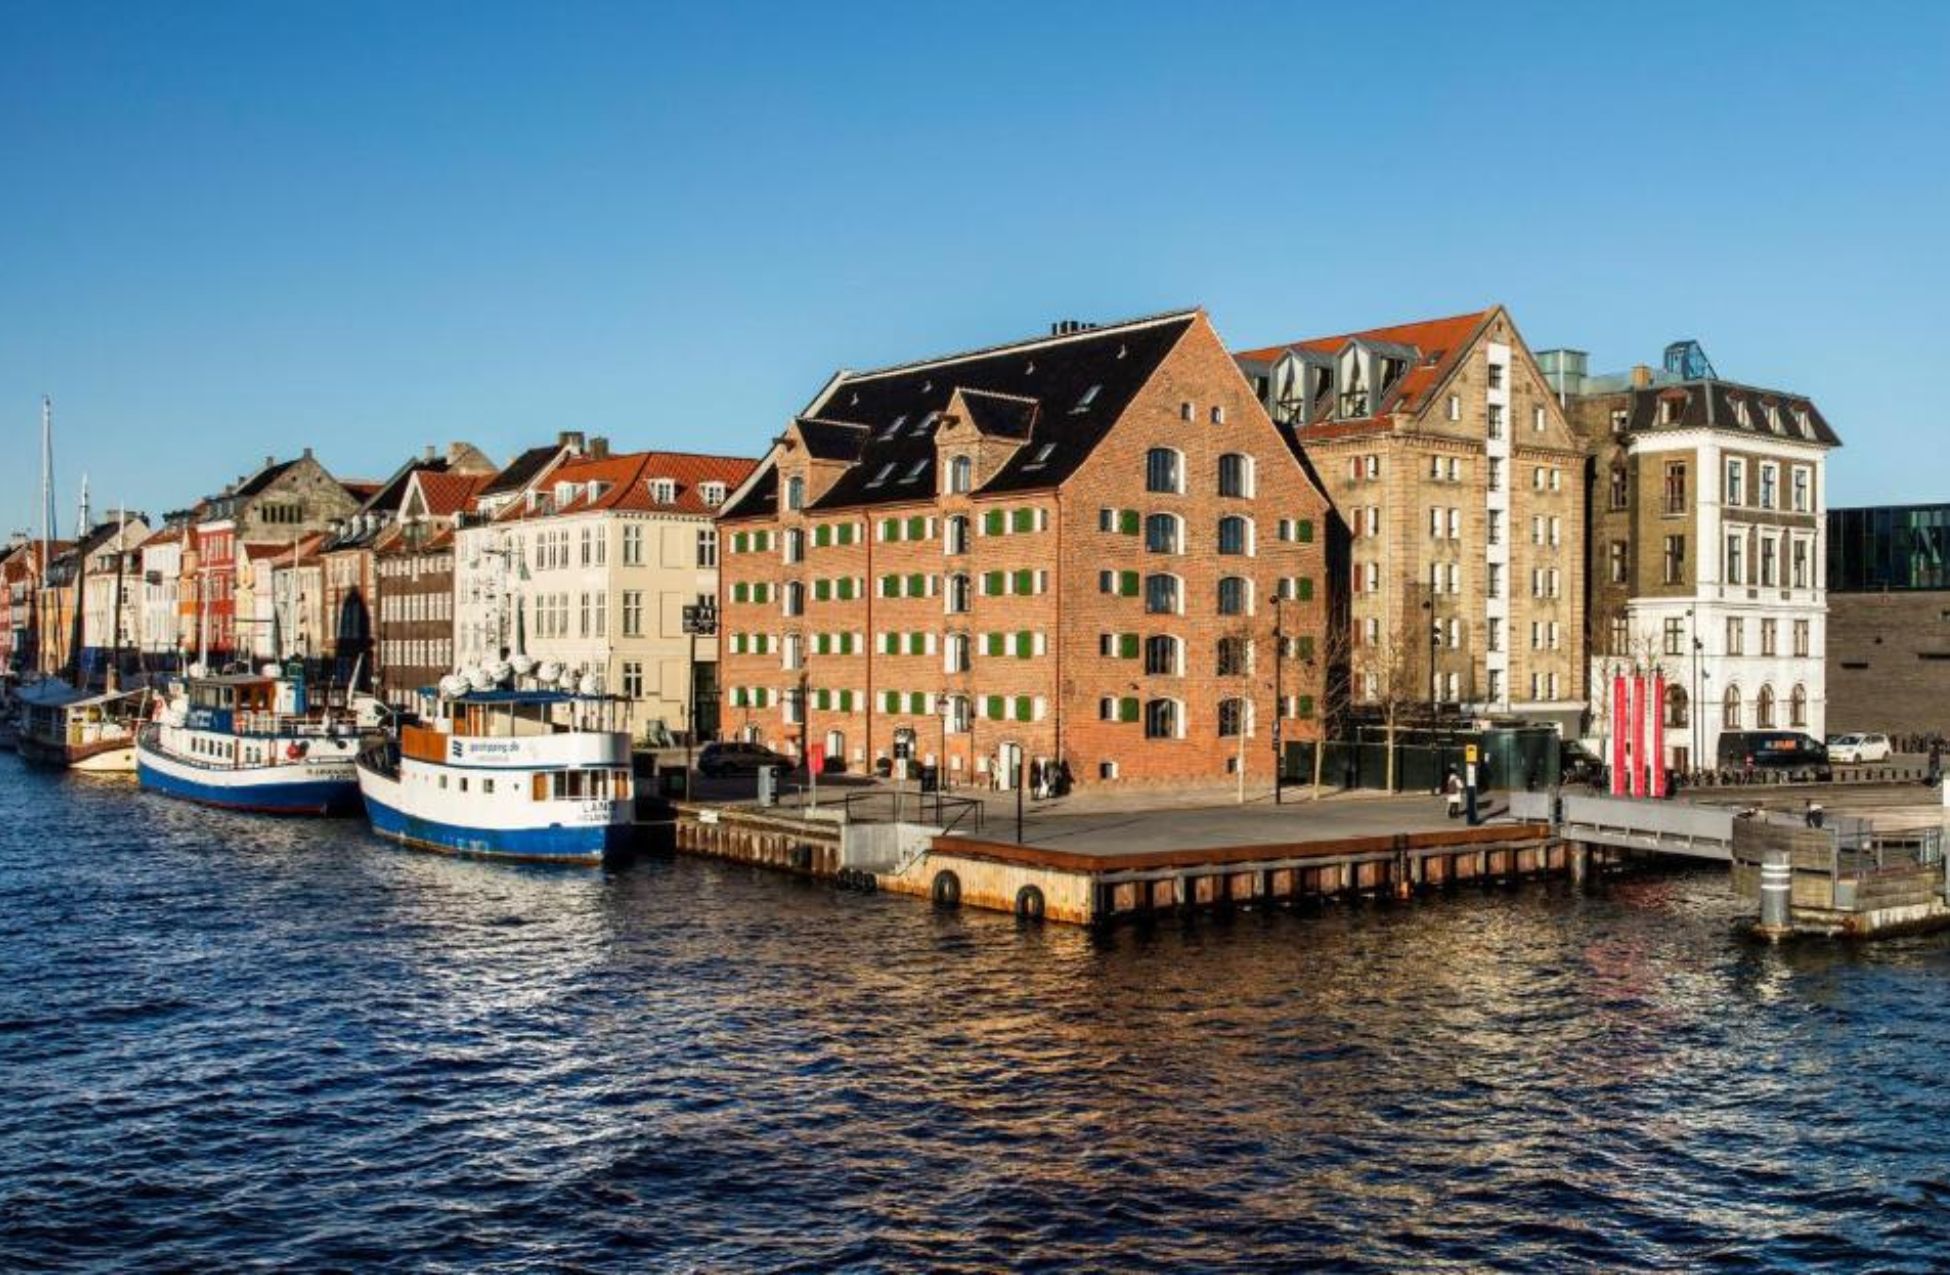 71 Nyhavn Hotel - Best Hotels In Copenhagen